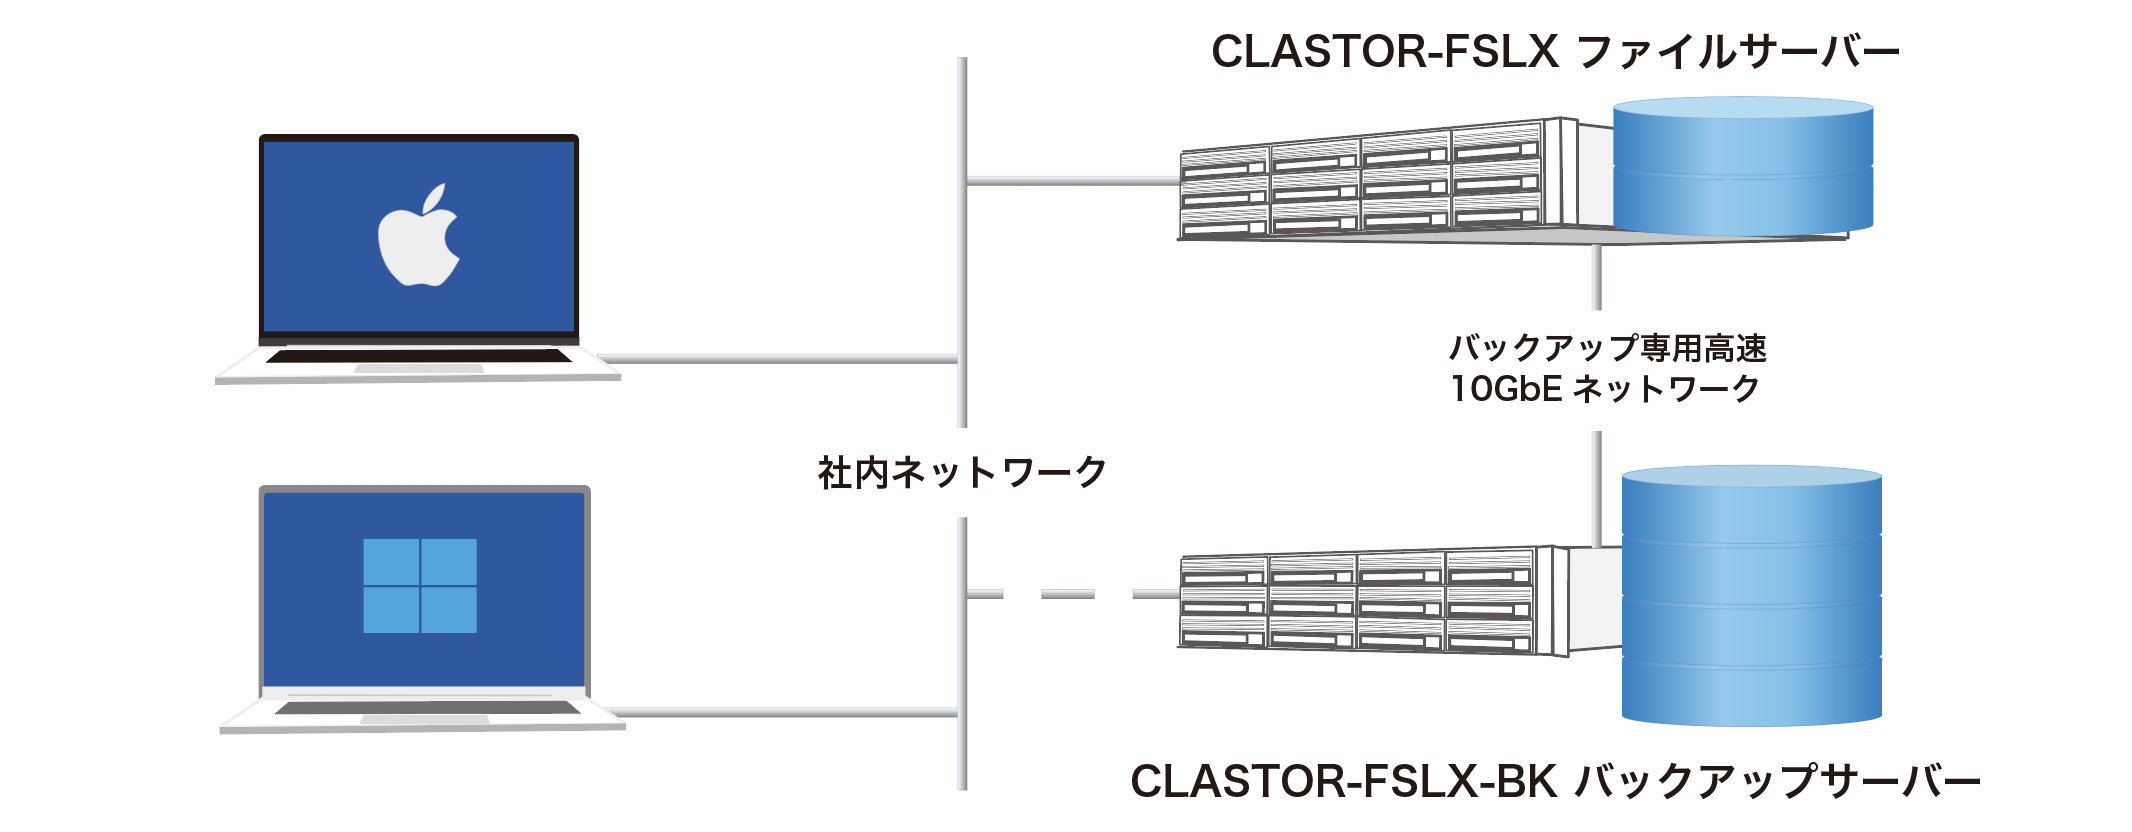 CLASTOR-FSLX system-view